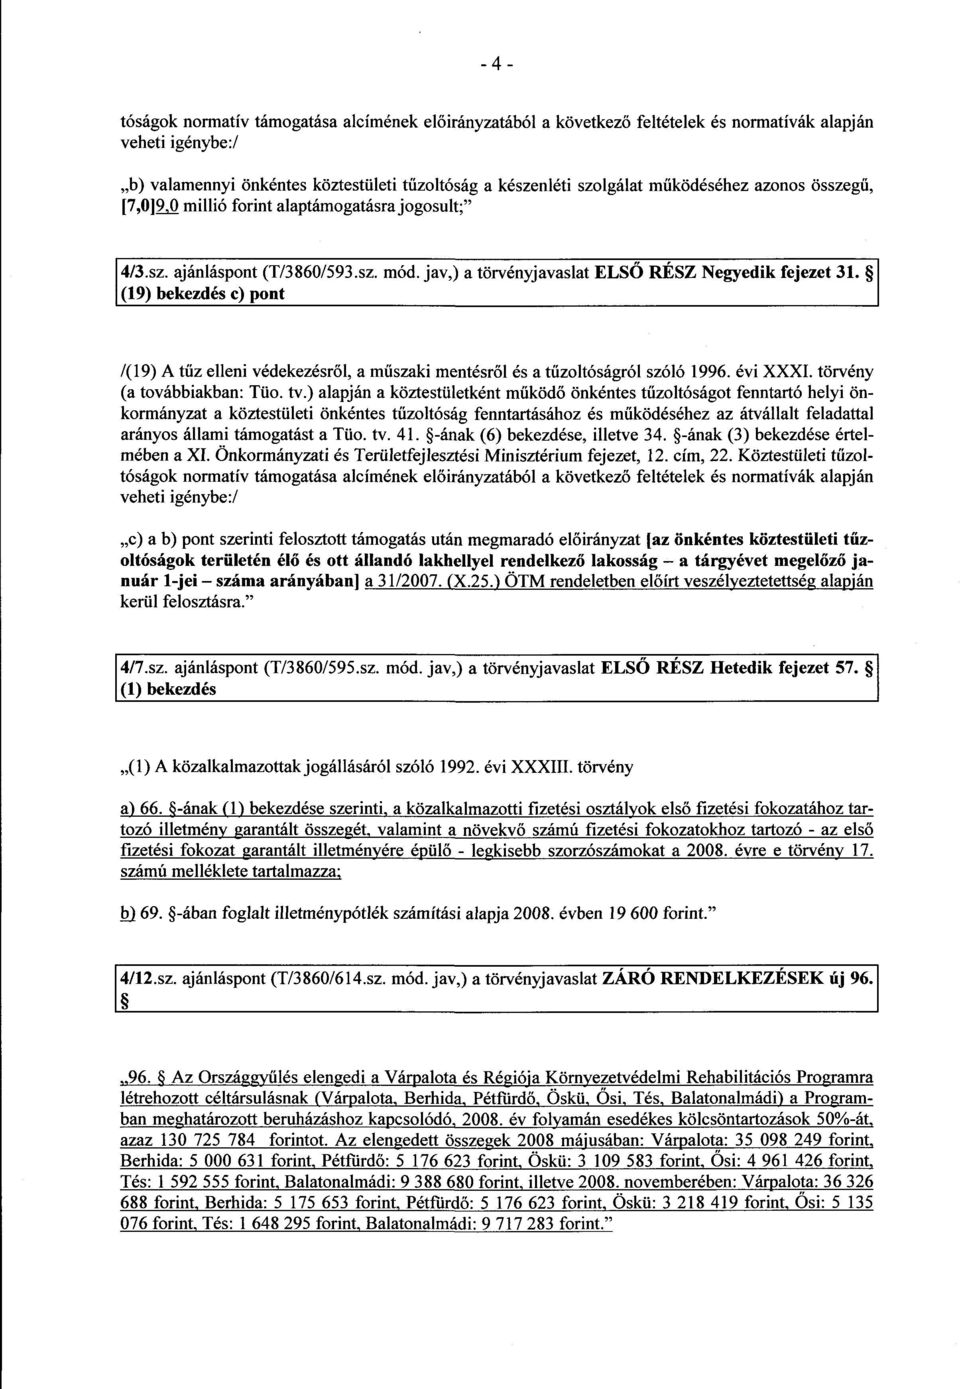 (19) bekezdés c) pon t /(19) A tűz elleni védekezésről, a műszaki mentésről és a tűzoltóságról szóló 1996. évi XXXI. törvény (a továbbiakban: Tüo. tv.